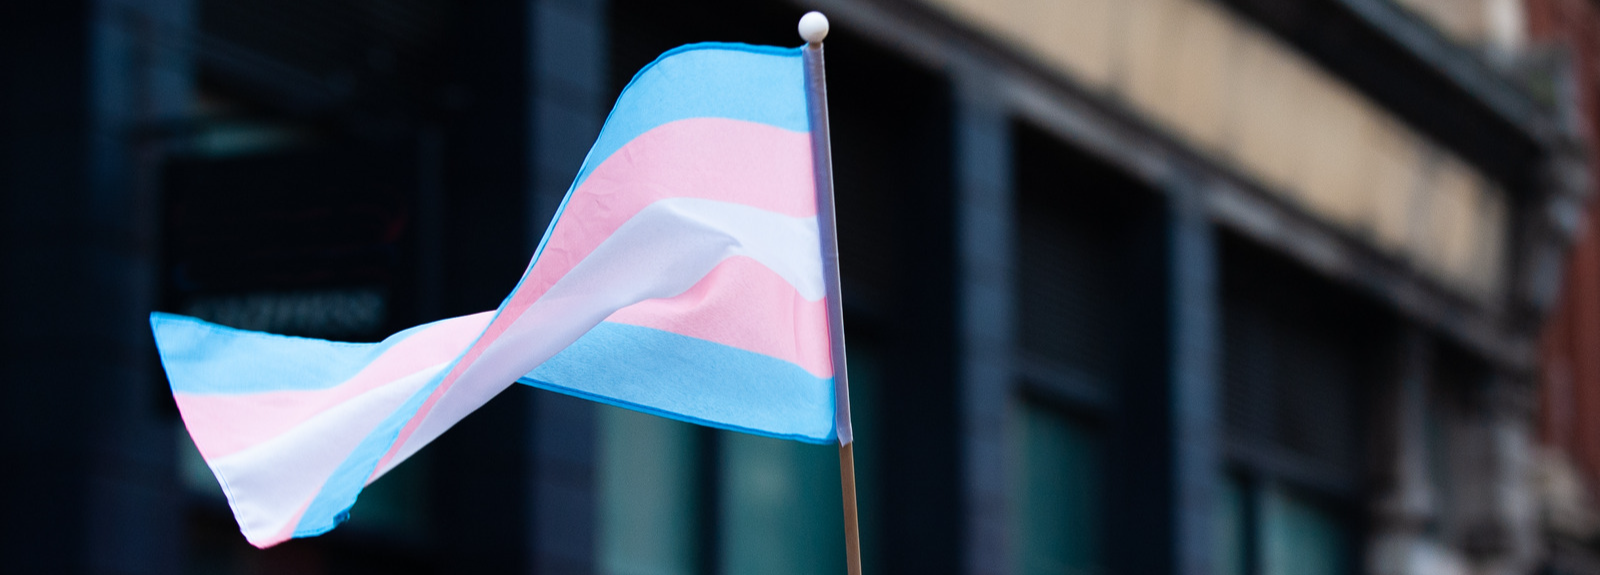 Image shows the transgender flag